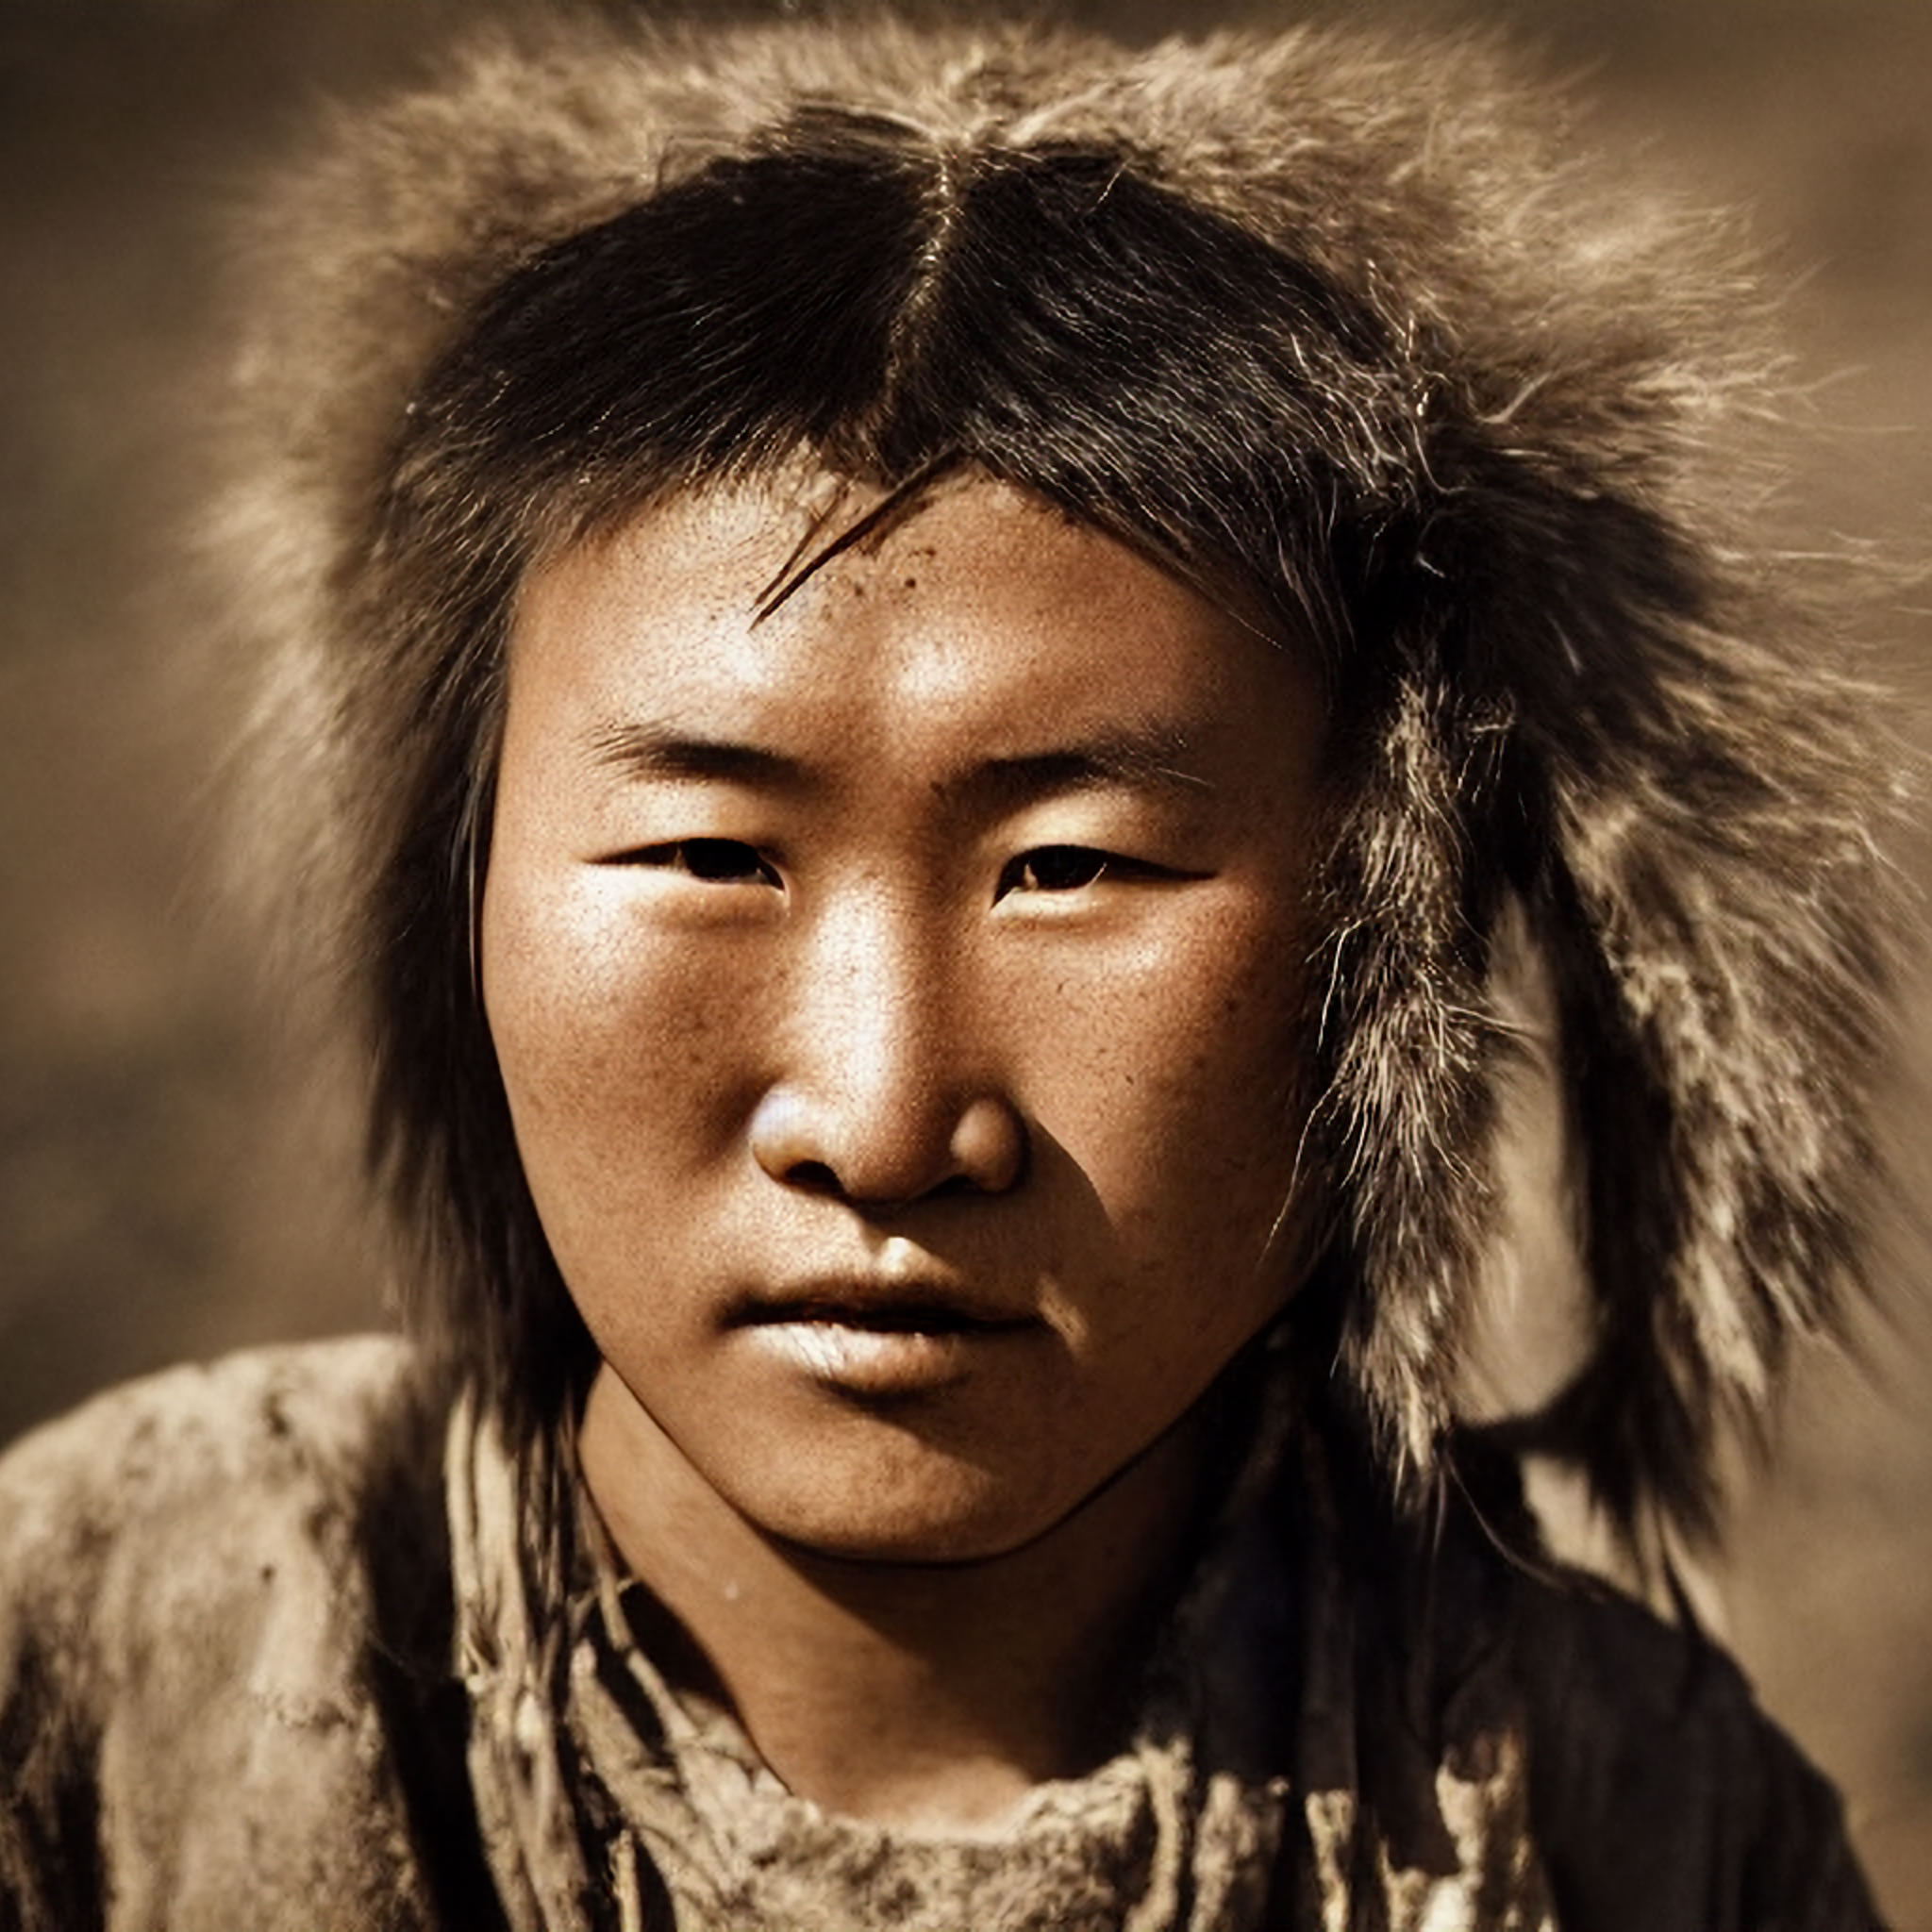 Mongolian Shaman With A Strong Face 1 • Viarami